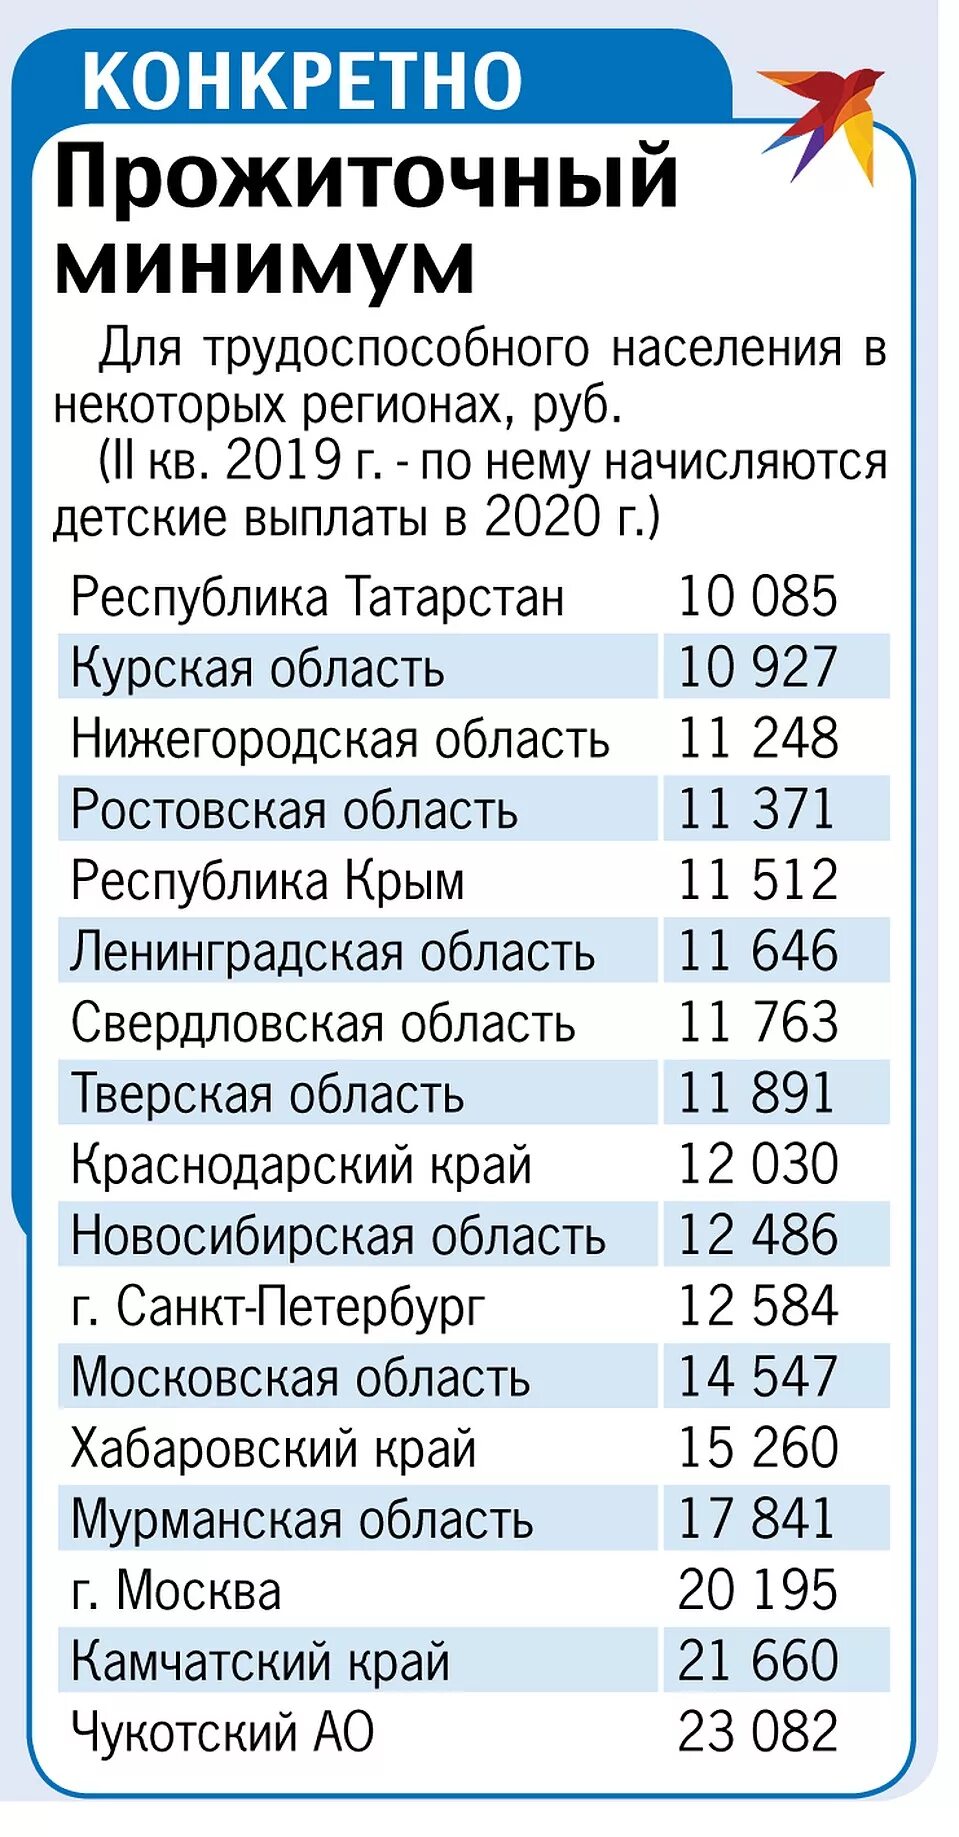 Путинские выплаты на второго. Путинское пособие до 3 лет. Путинские выплаты 2020. Пособие с 3 до 7 лет в 2020 году. Путинские выплаты от года до 3 сумма выплат.